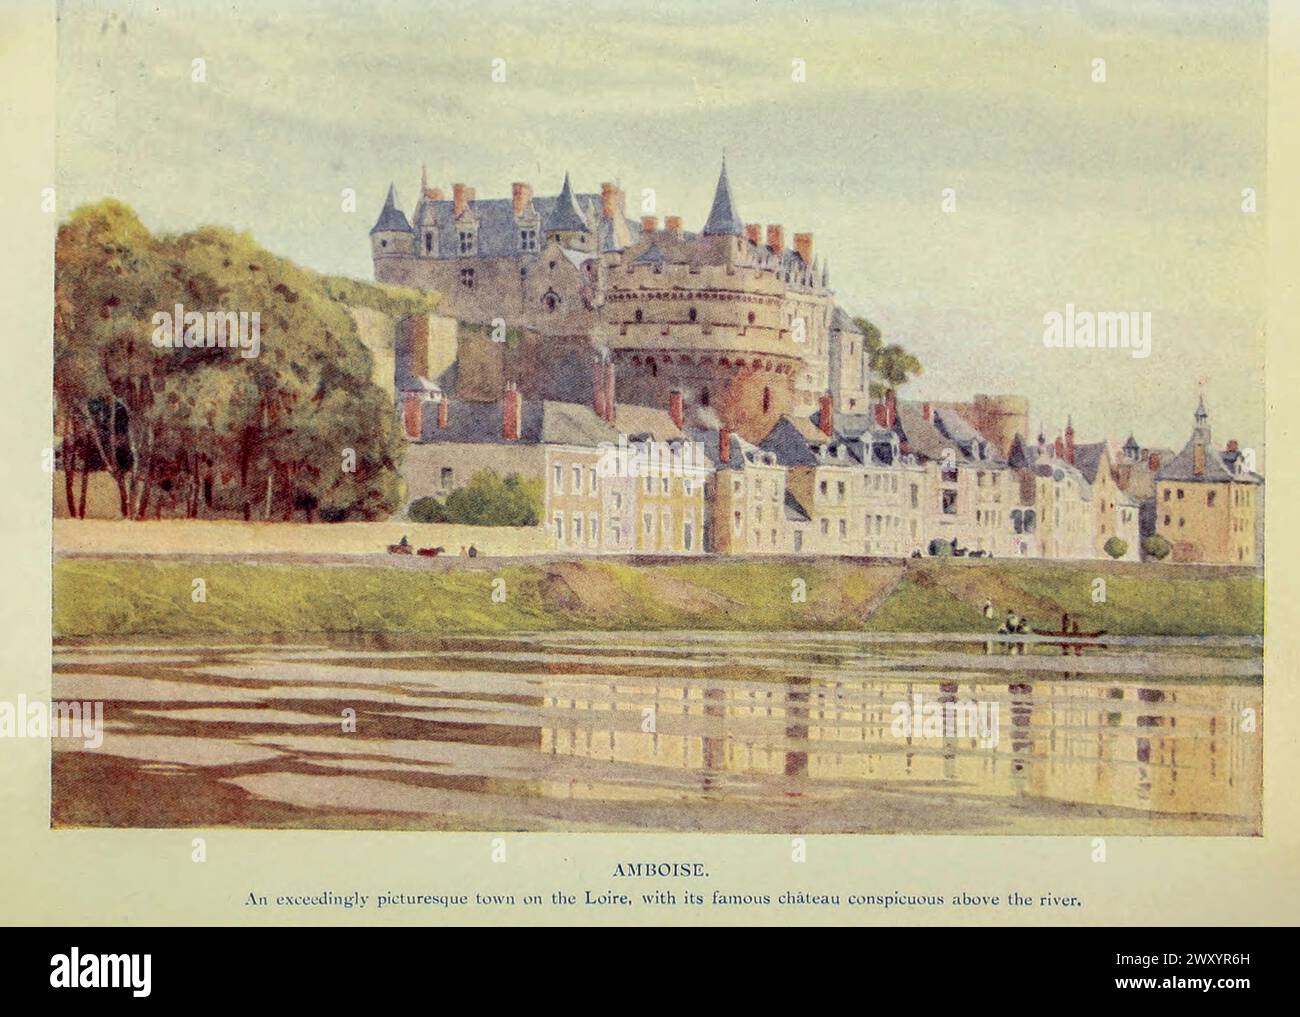 Amboise, Loire 1910 von Gordon Cochrane Home (* 25. Juli 1878 bis 13. Dezember 1969) war ein englischer Landschaftskünstler, Schriftsteller und Illustrator. Amboise ist eine Gemeinde im Departement Indre-et-Loire in Zentralfrankreich. Heute war es eine kleine Marktstadt, einst Sitz des französischen Königshofes. Stockfoto